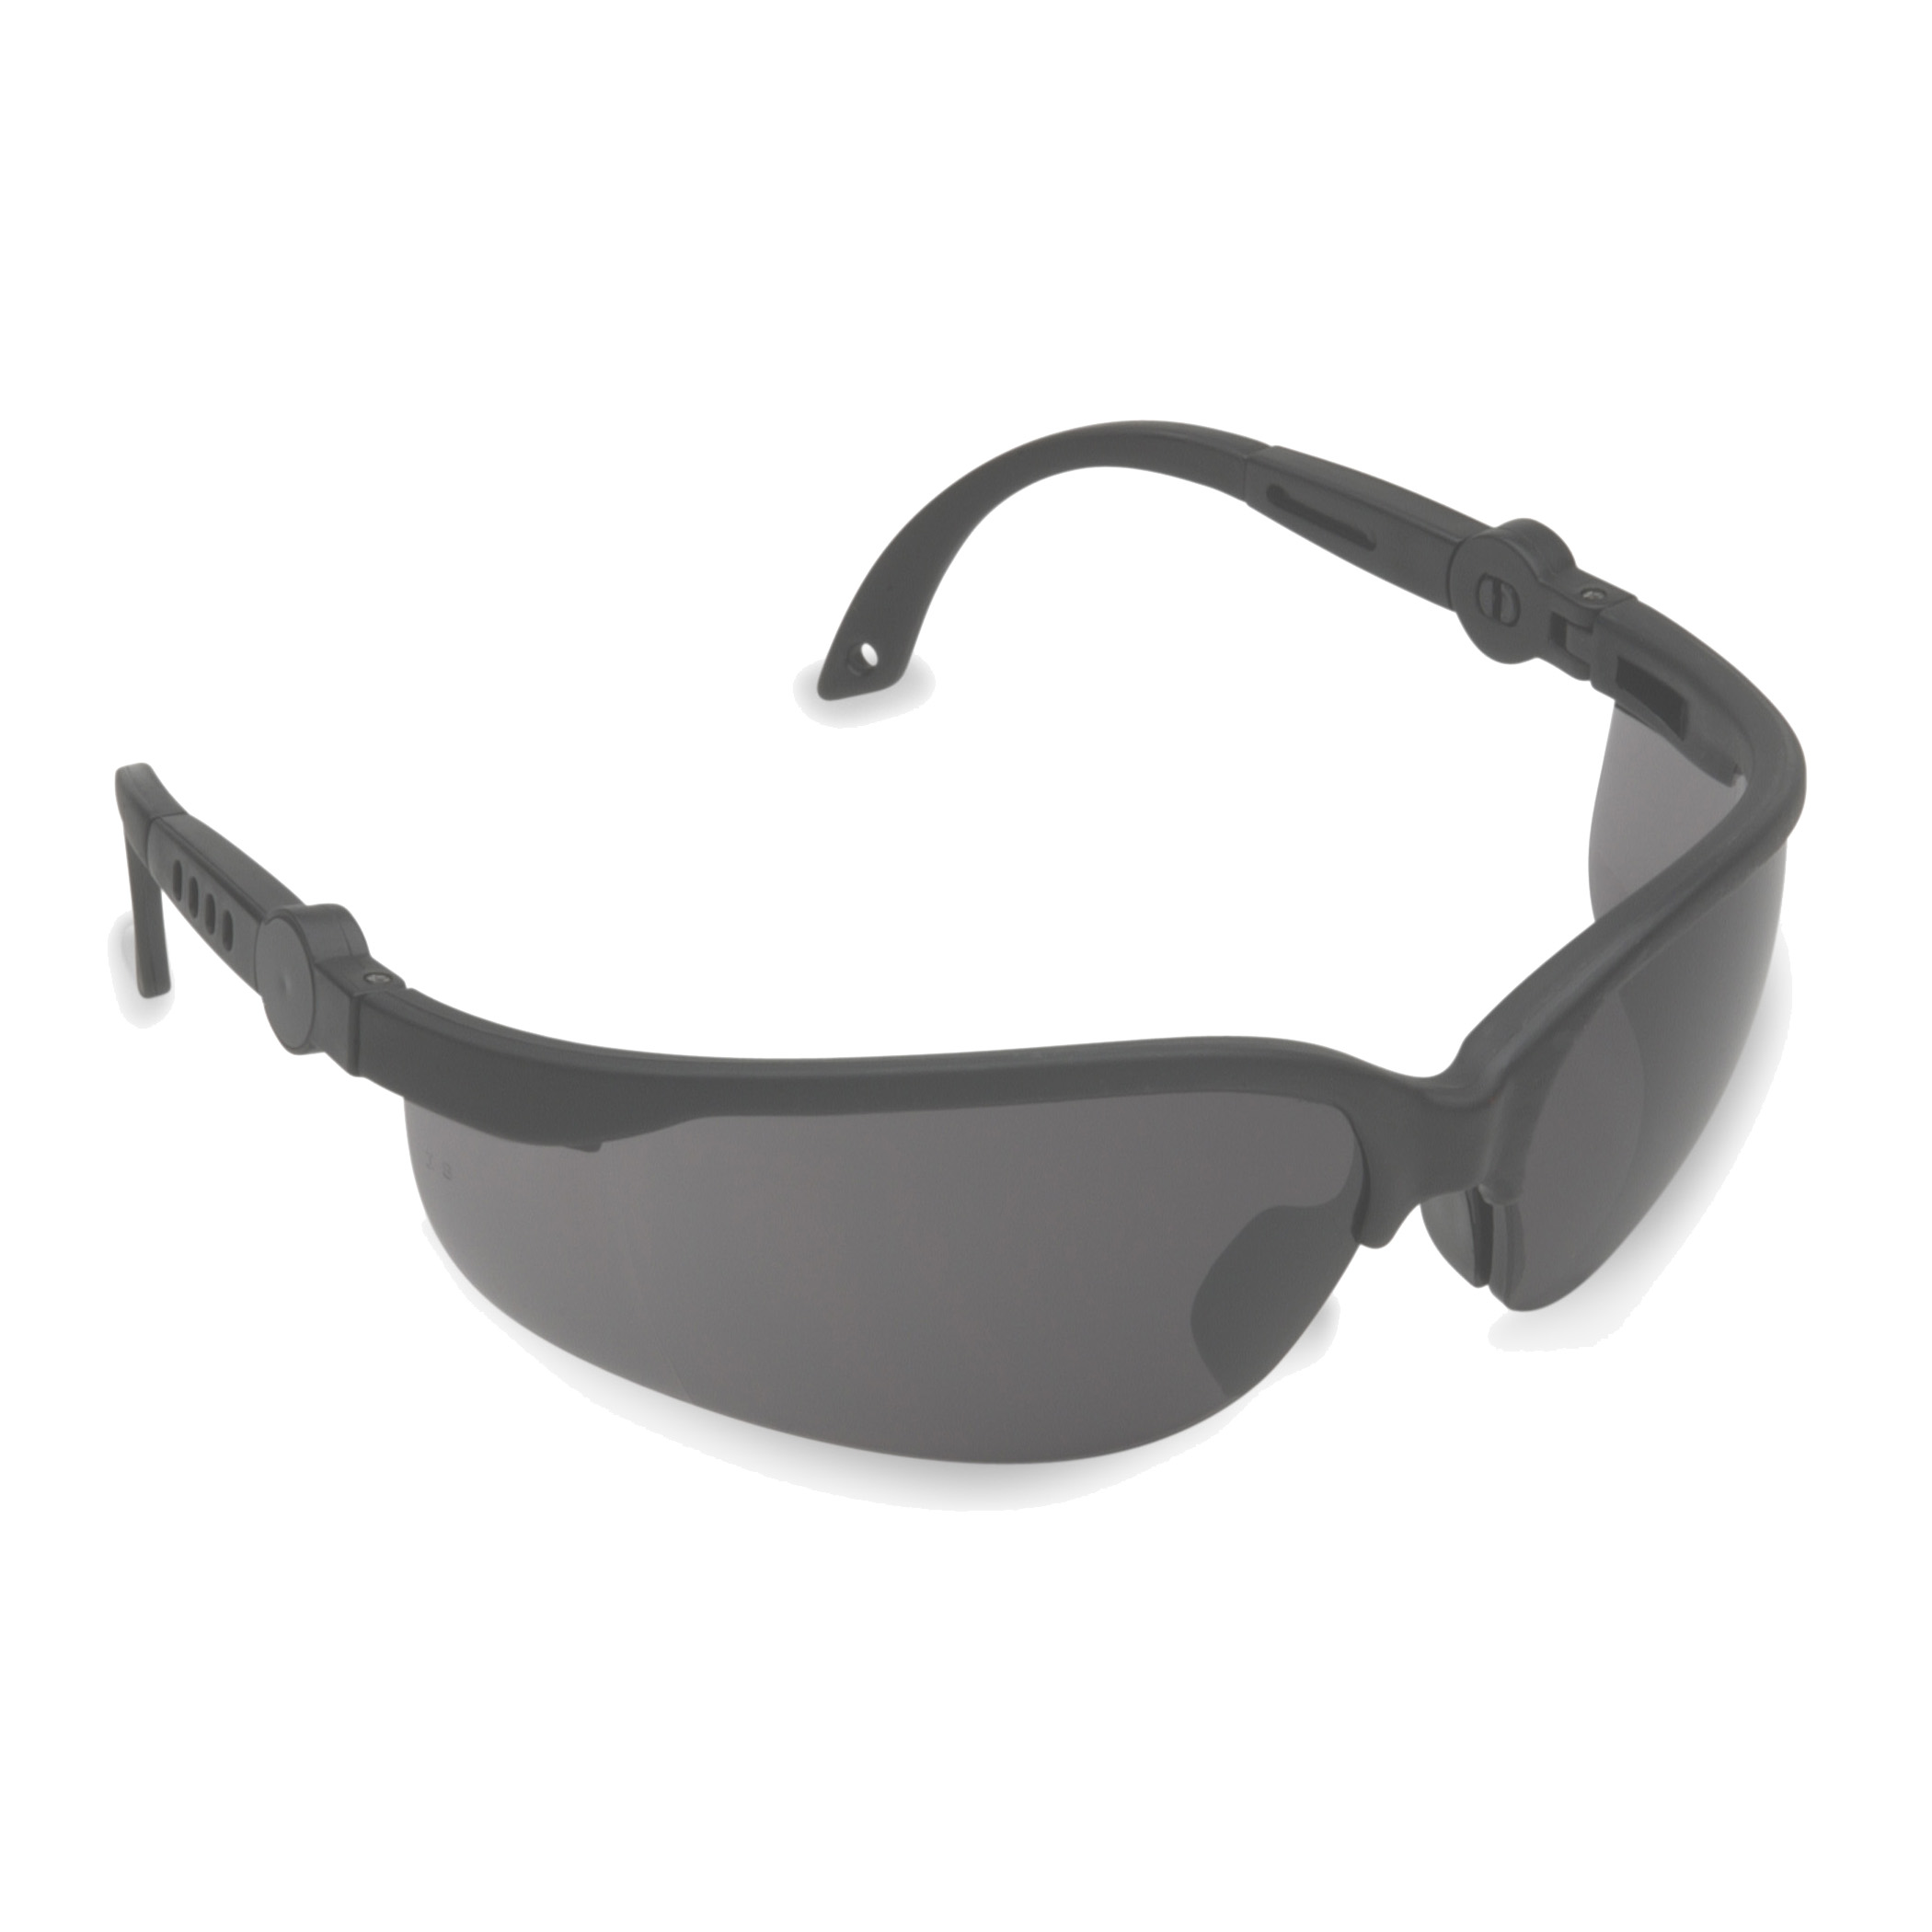 EFB20S Akita safety glasses
black frame gray lens